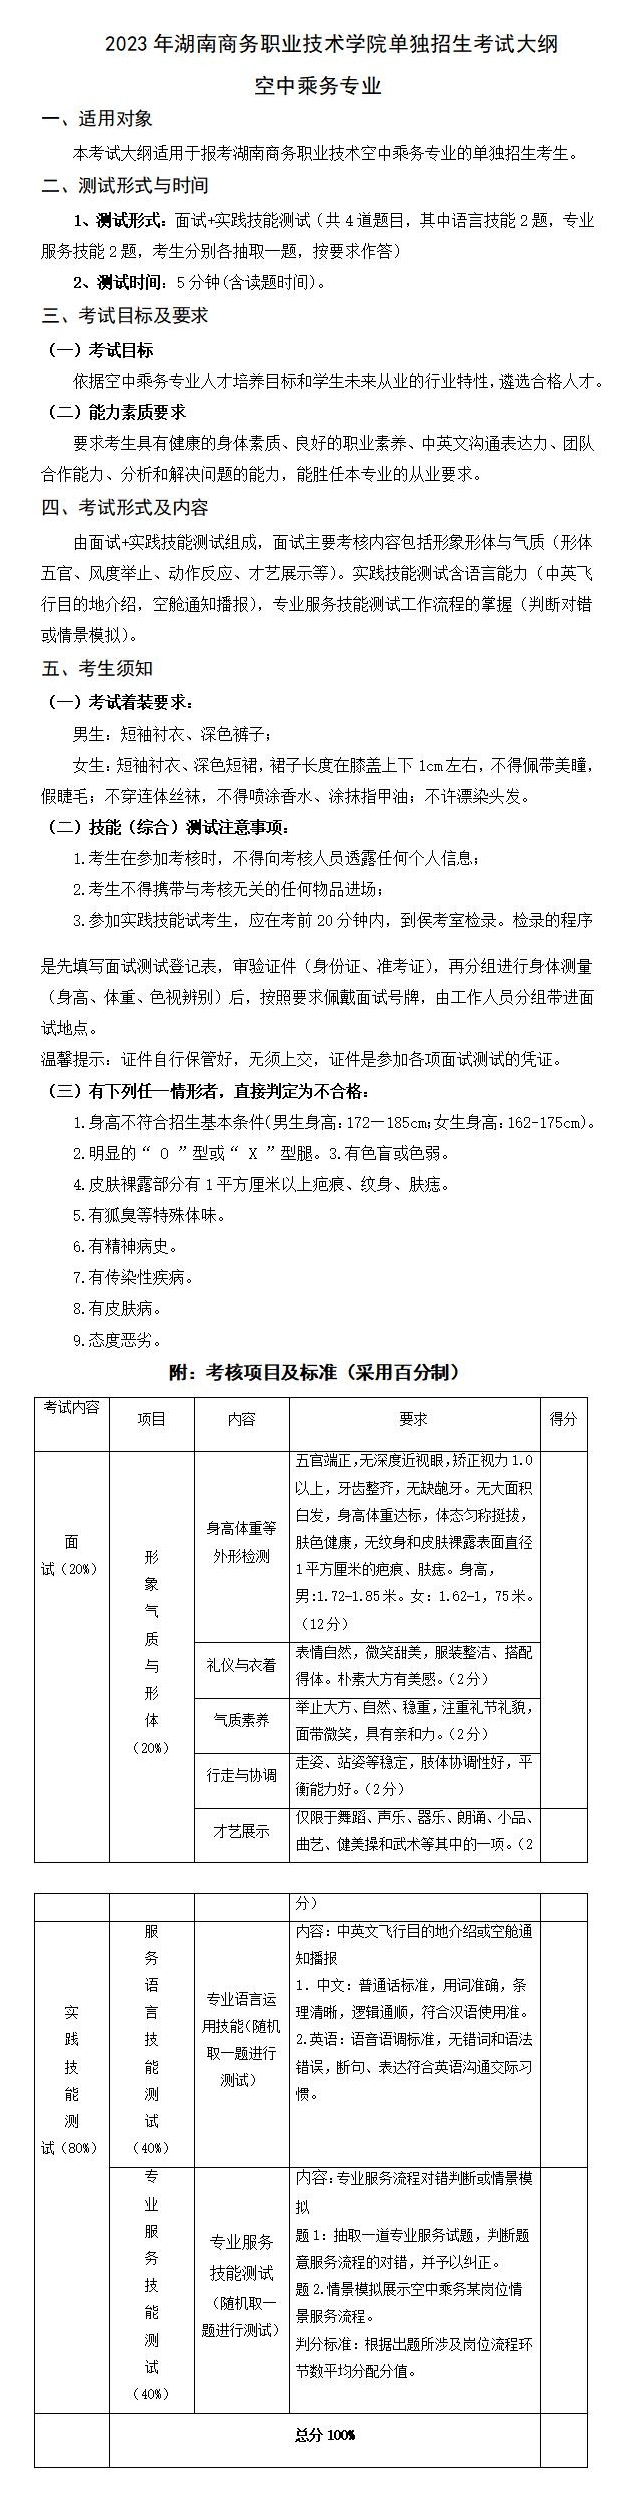 2023年湖南商务职业技术学院单招空中乘务专业考试大纲